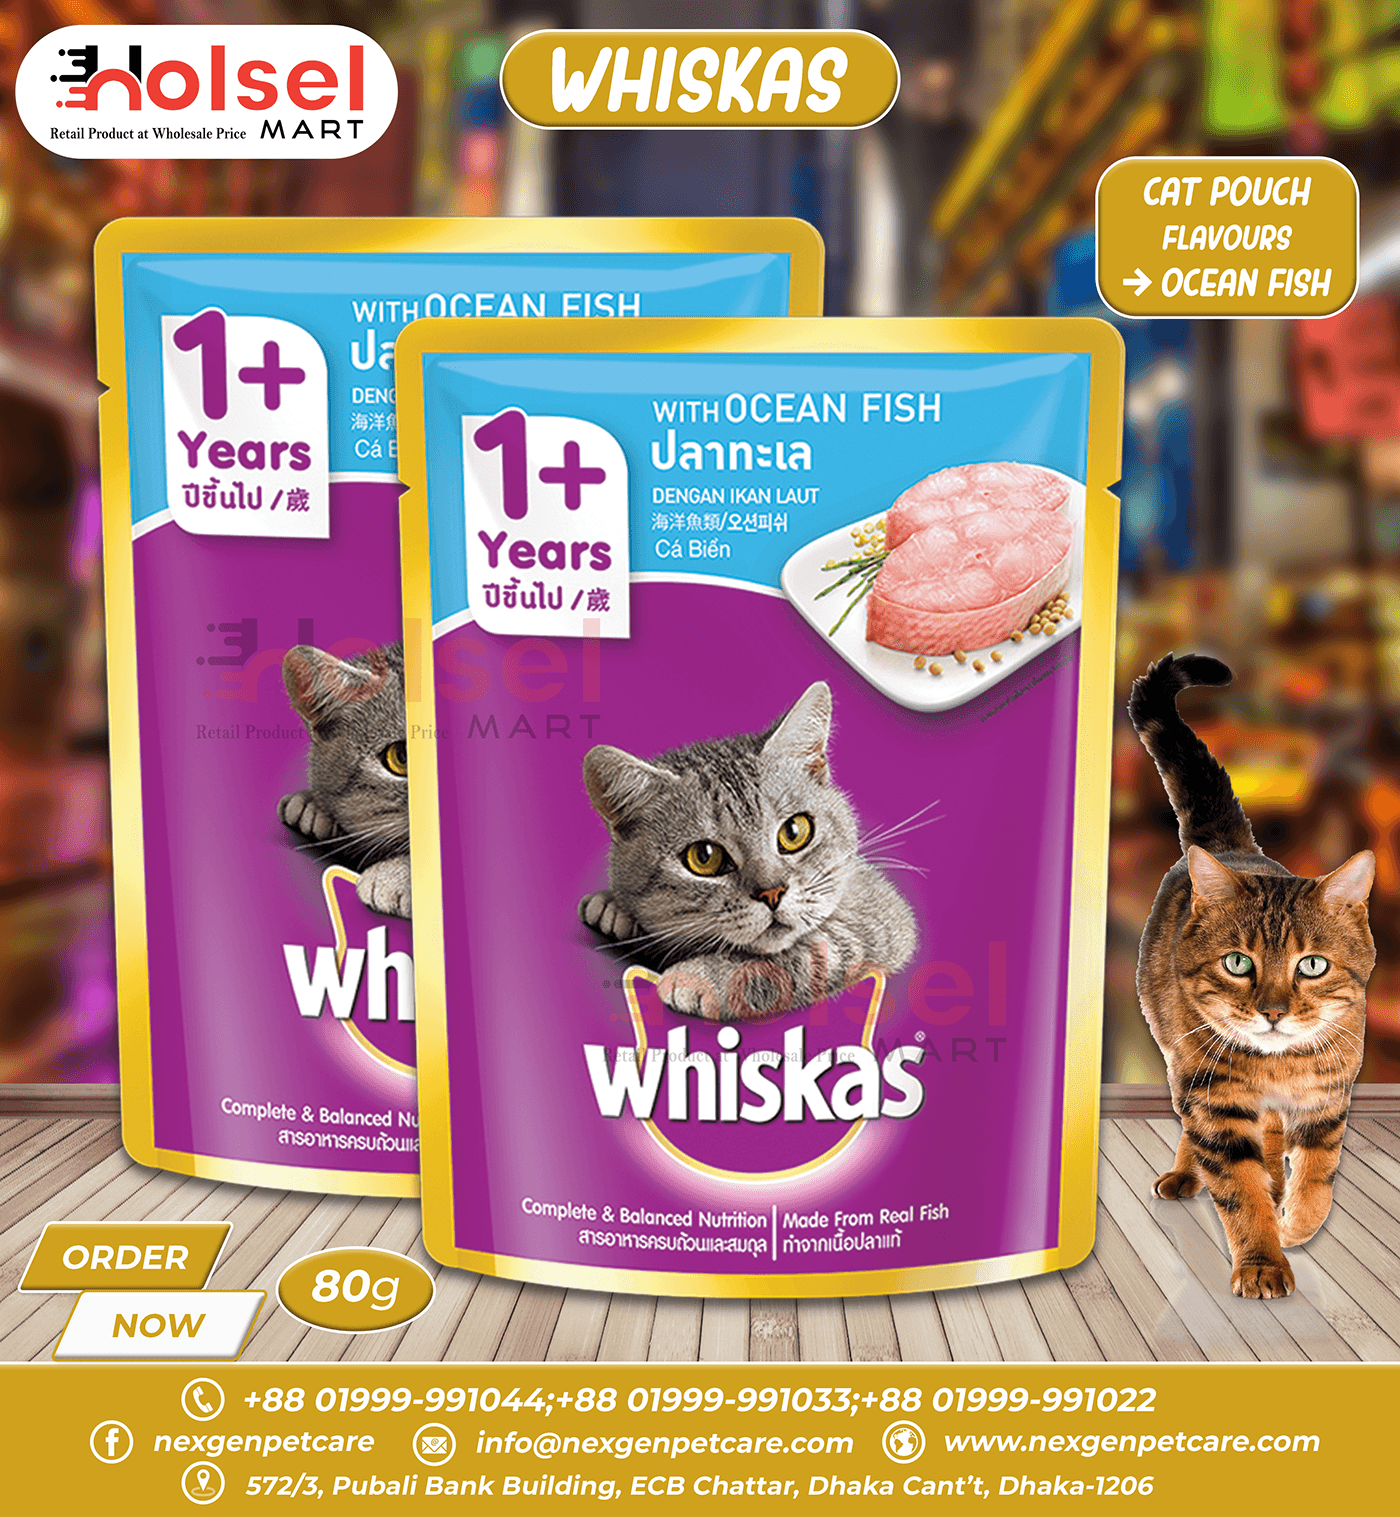 whiskas cat food animal Cat cats Food  Social media post visual identity Graphic Designer Advertising 